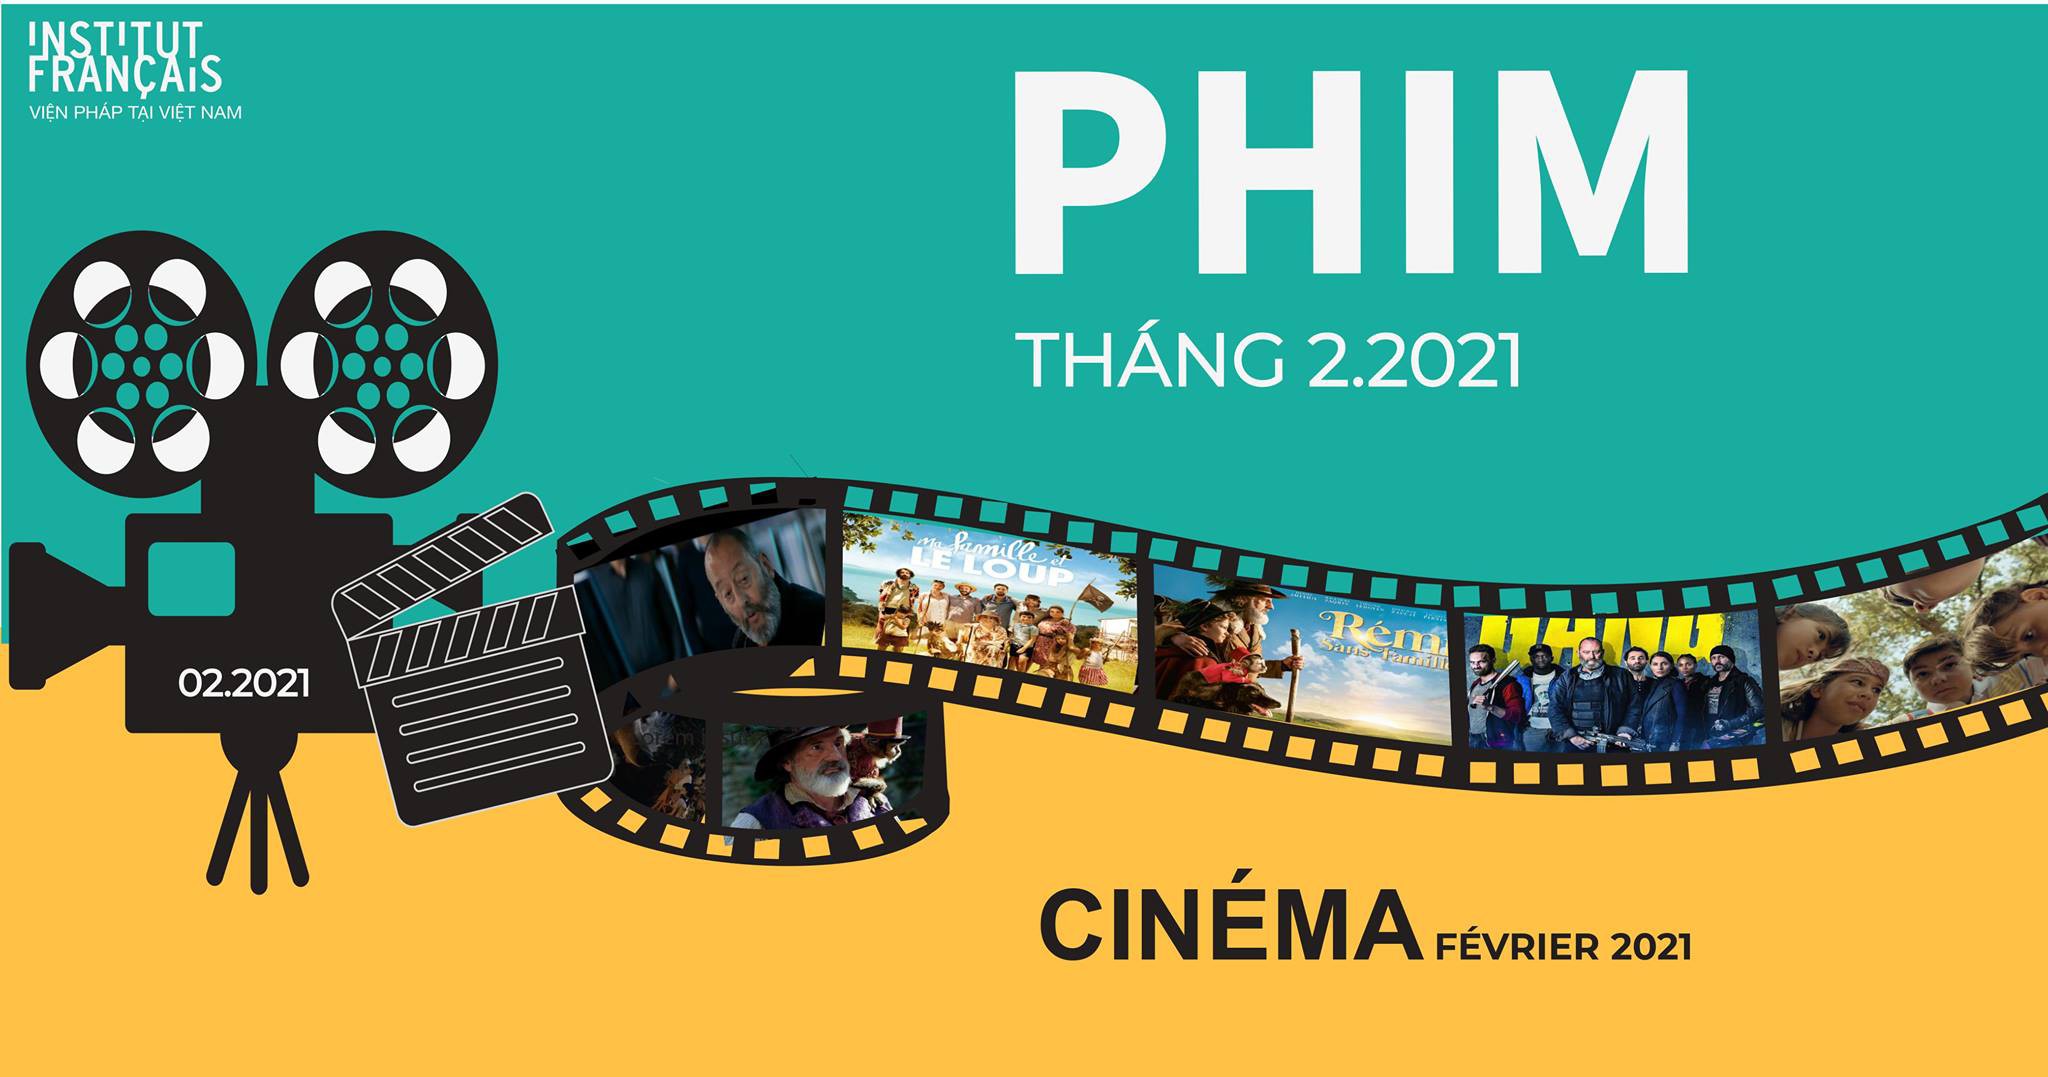 Sự kiện điện ảnh - Phim tháng 2 - Viện Pháp tại Hà Nội L'Espace